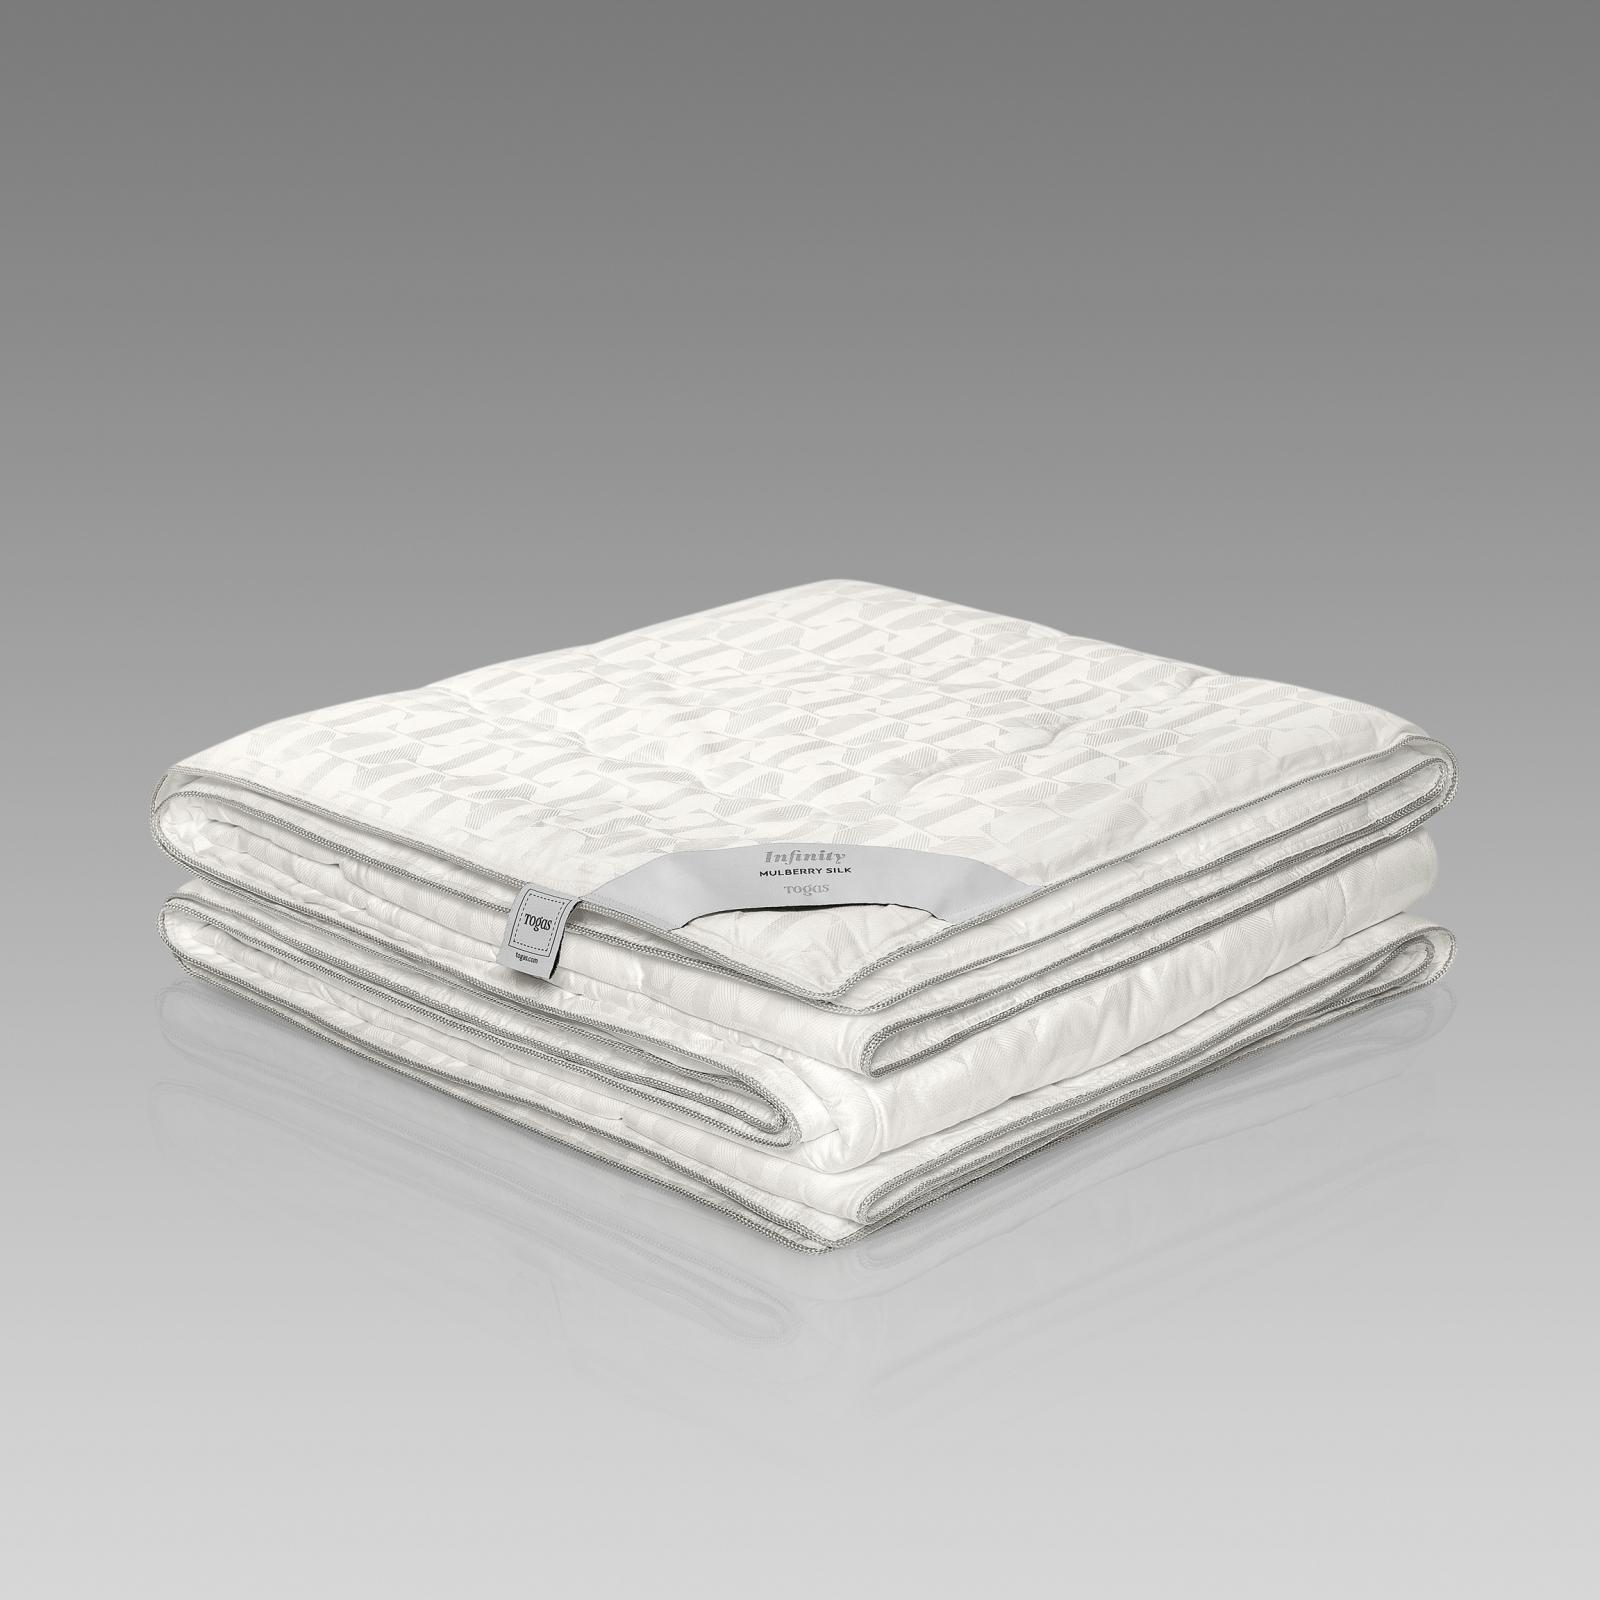 Одеяло Togas Инфинити 140х200 см (20.04.16.0113) одеяло виенто togas 140х200